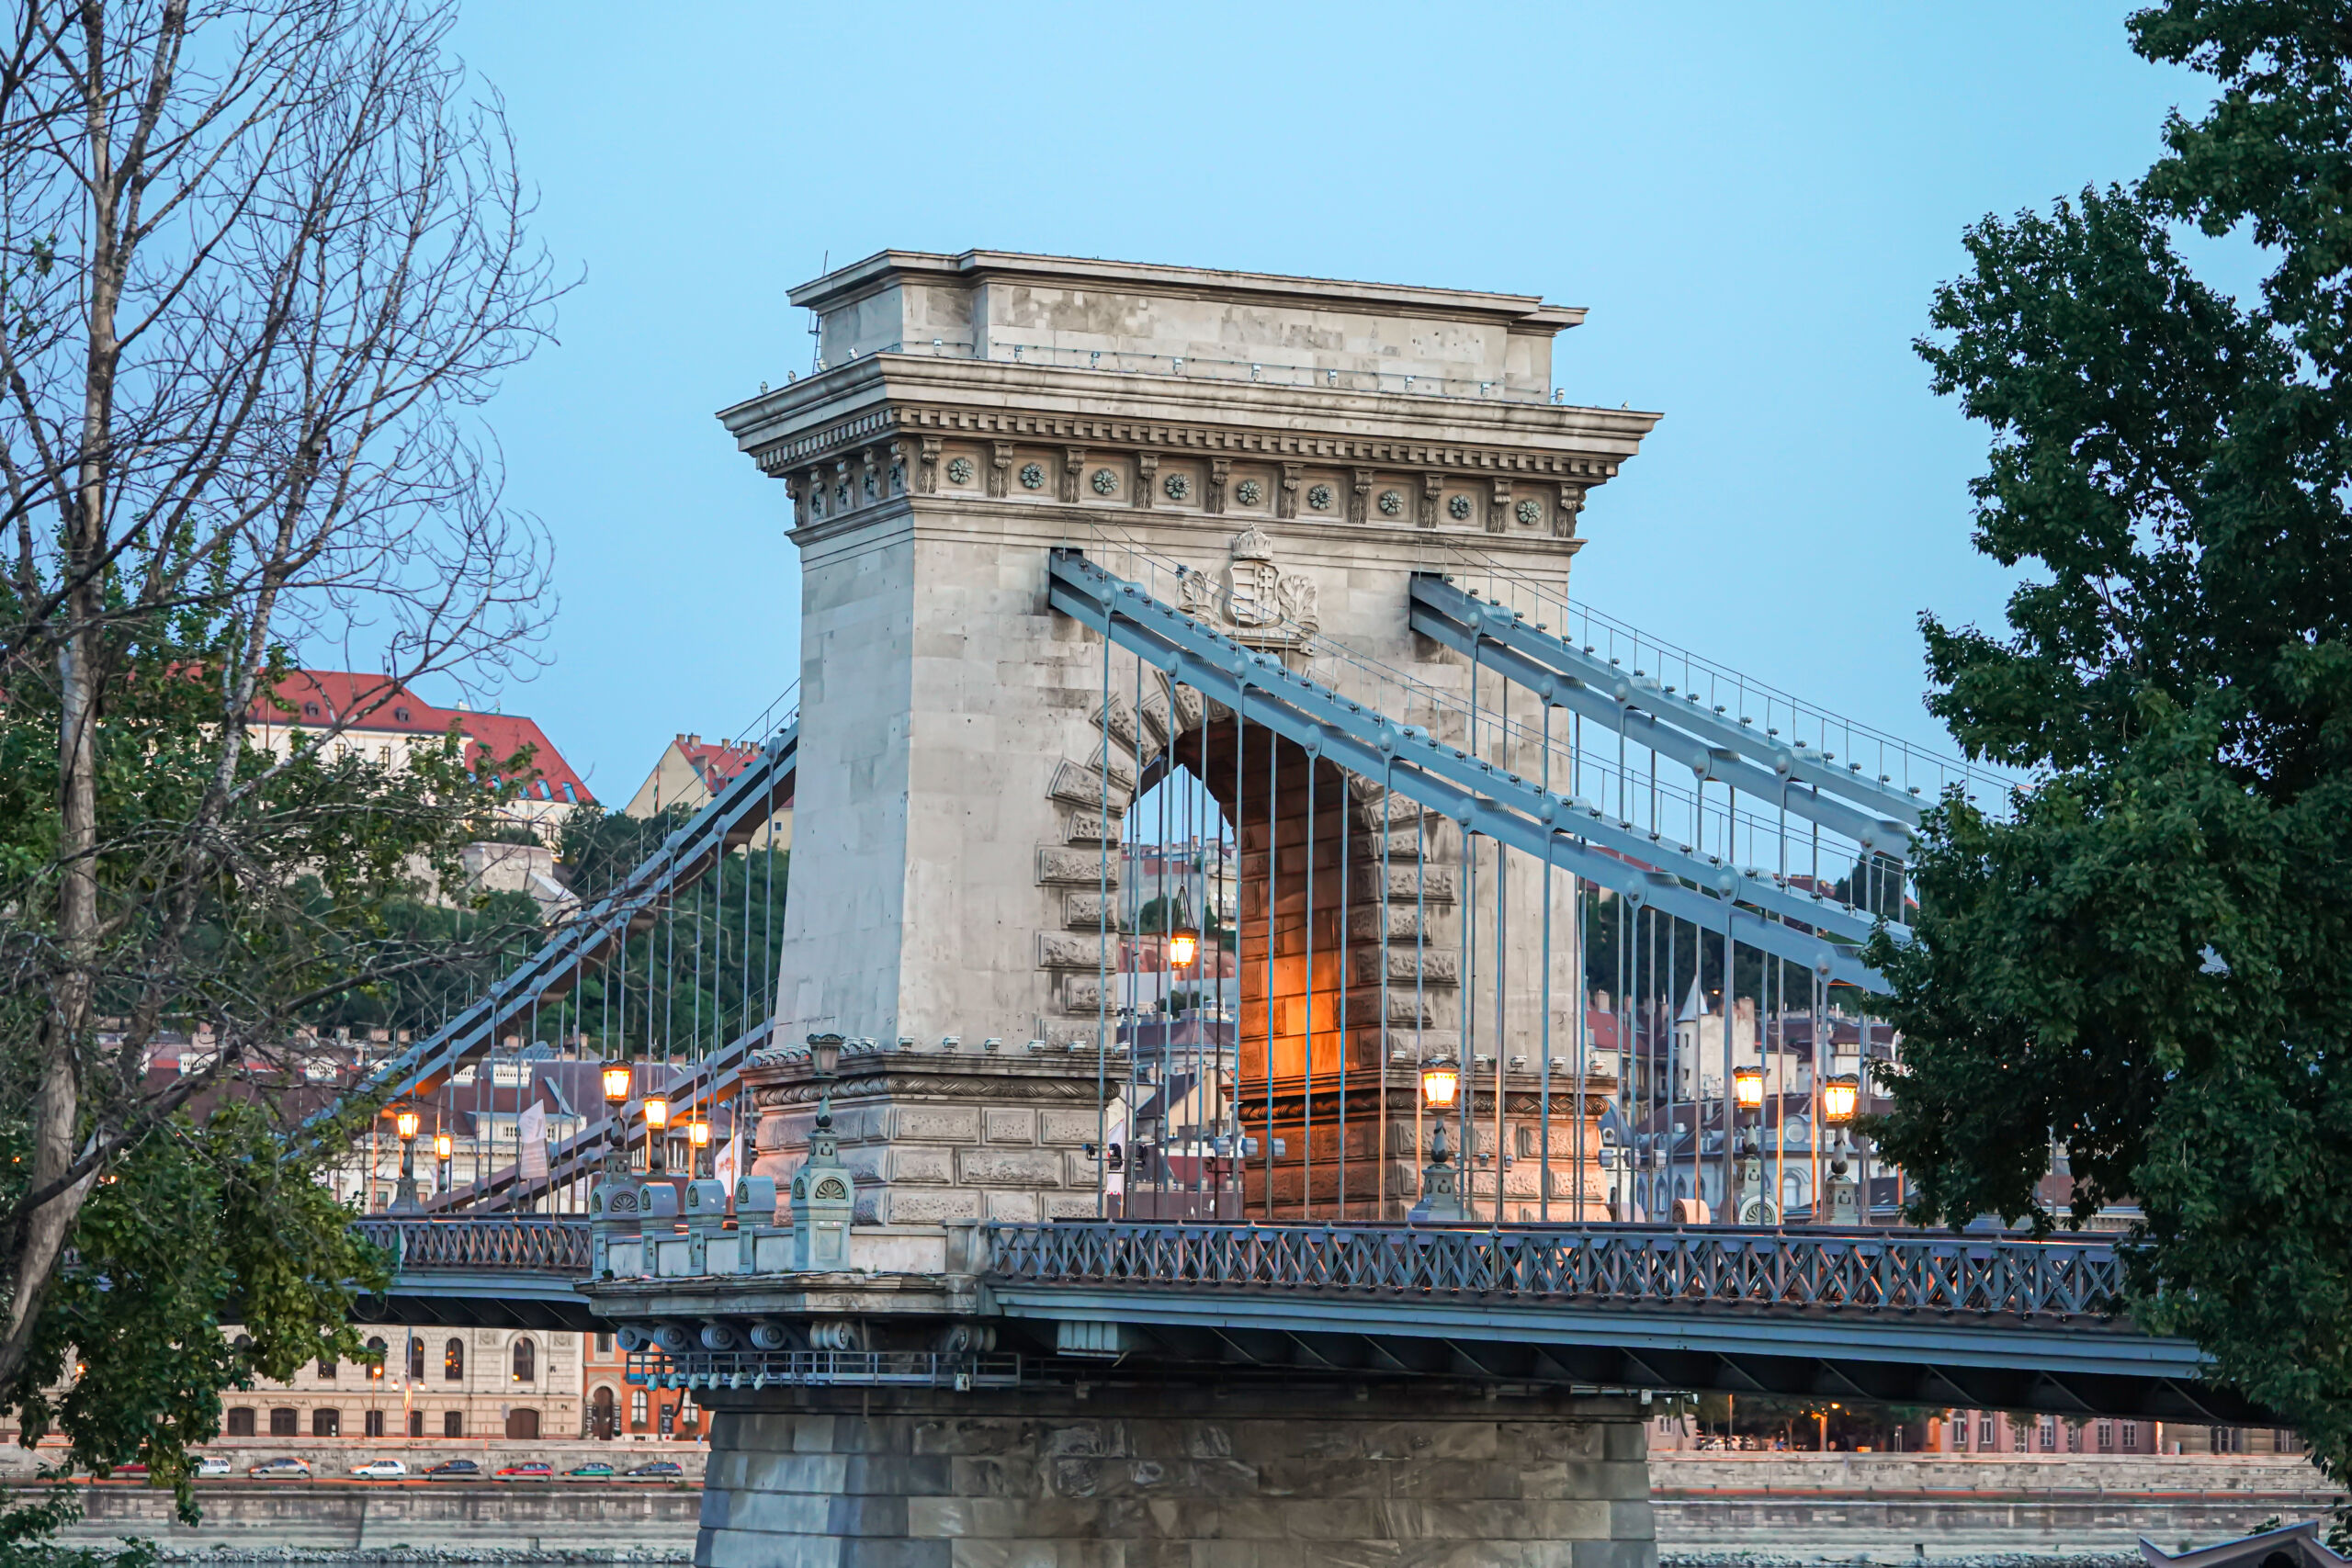 The Chain Bridge (Lánchíd) in Budapest